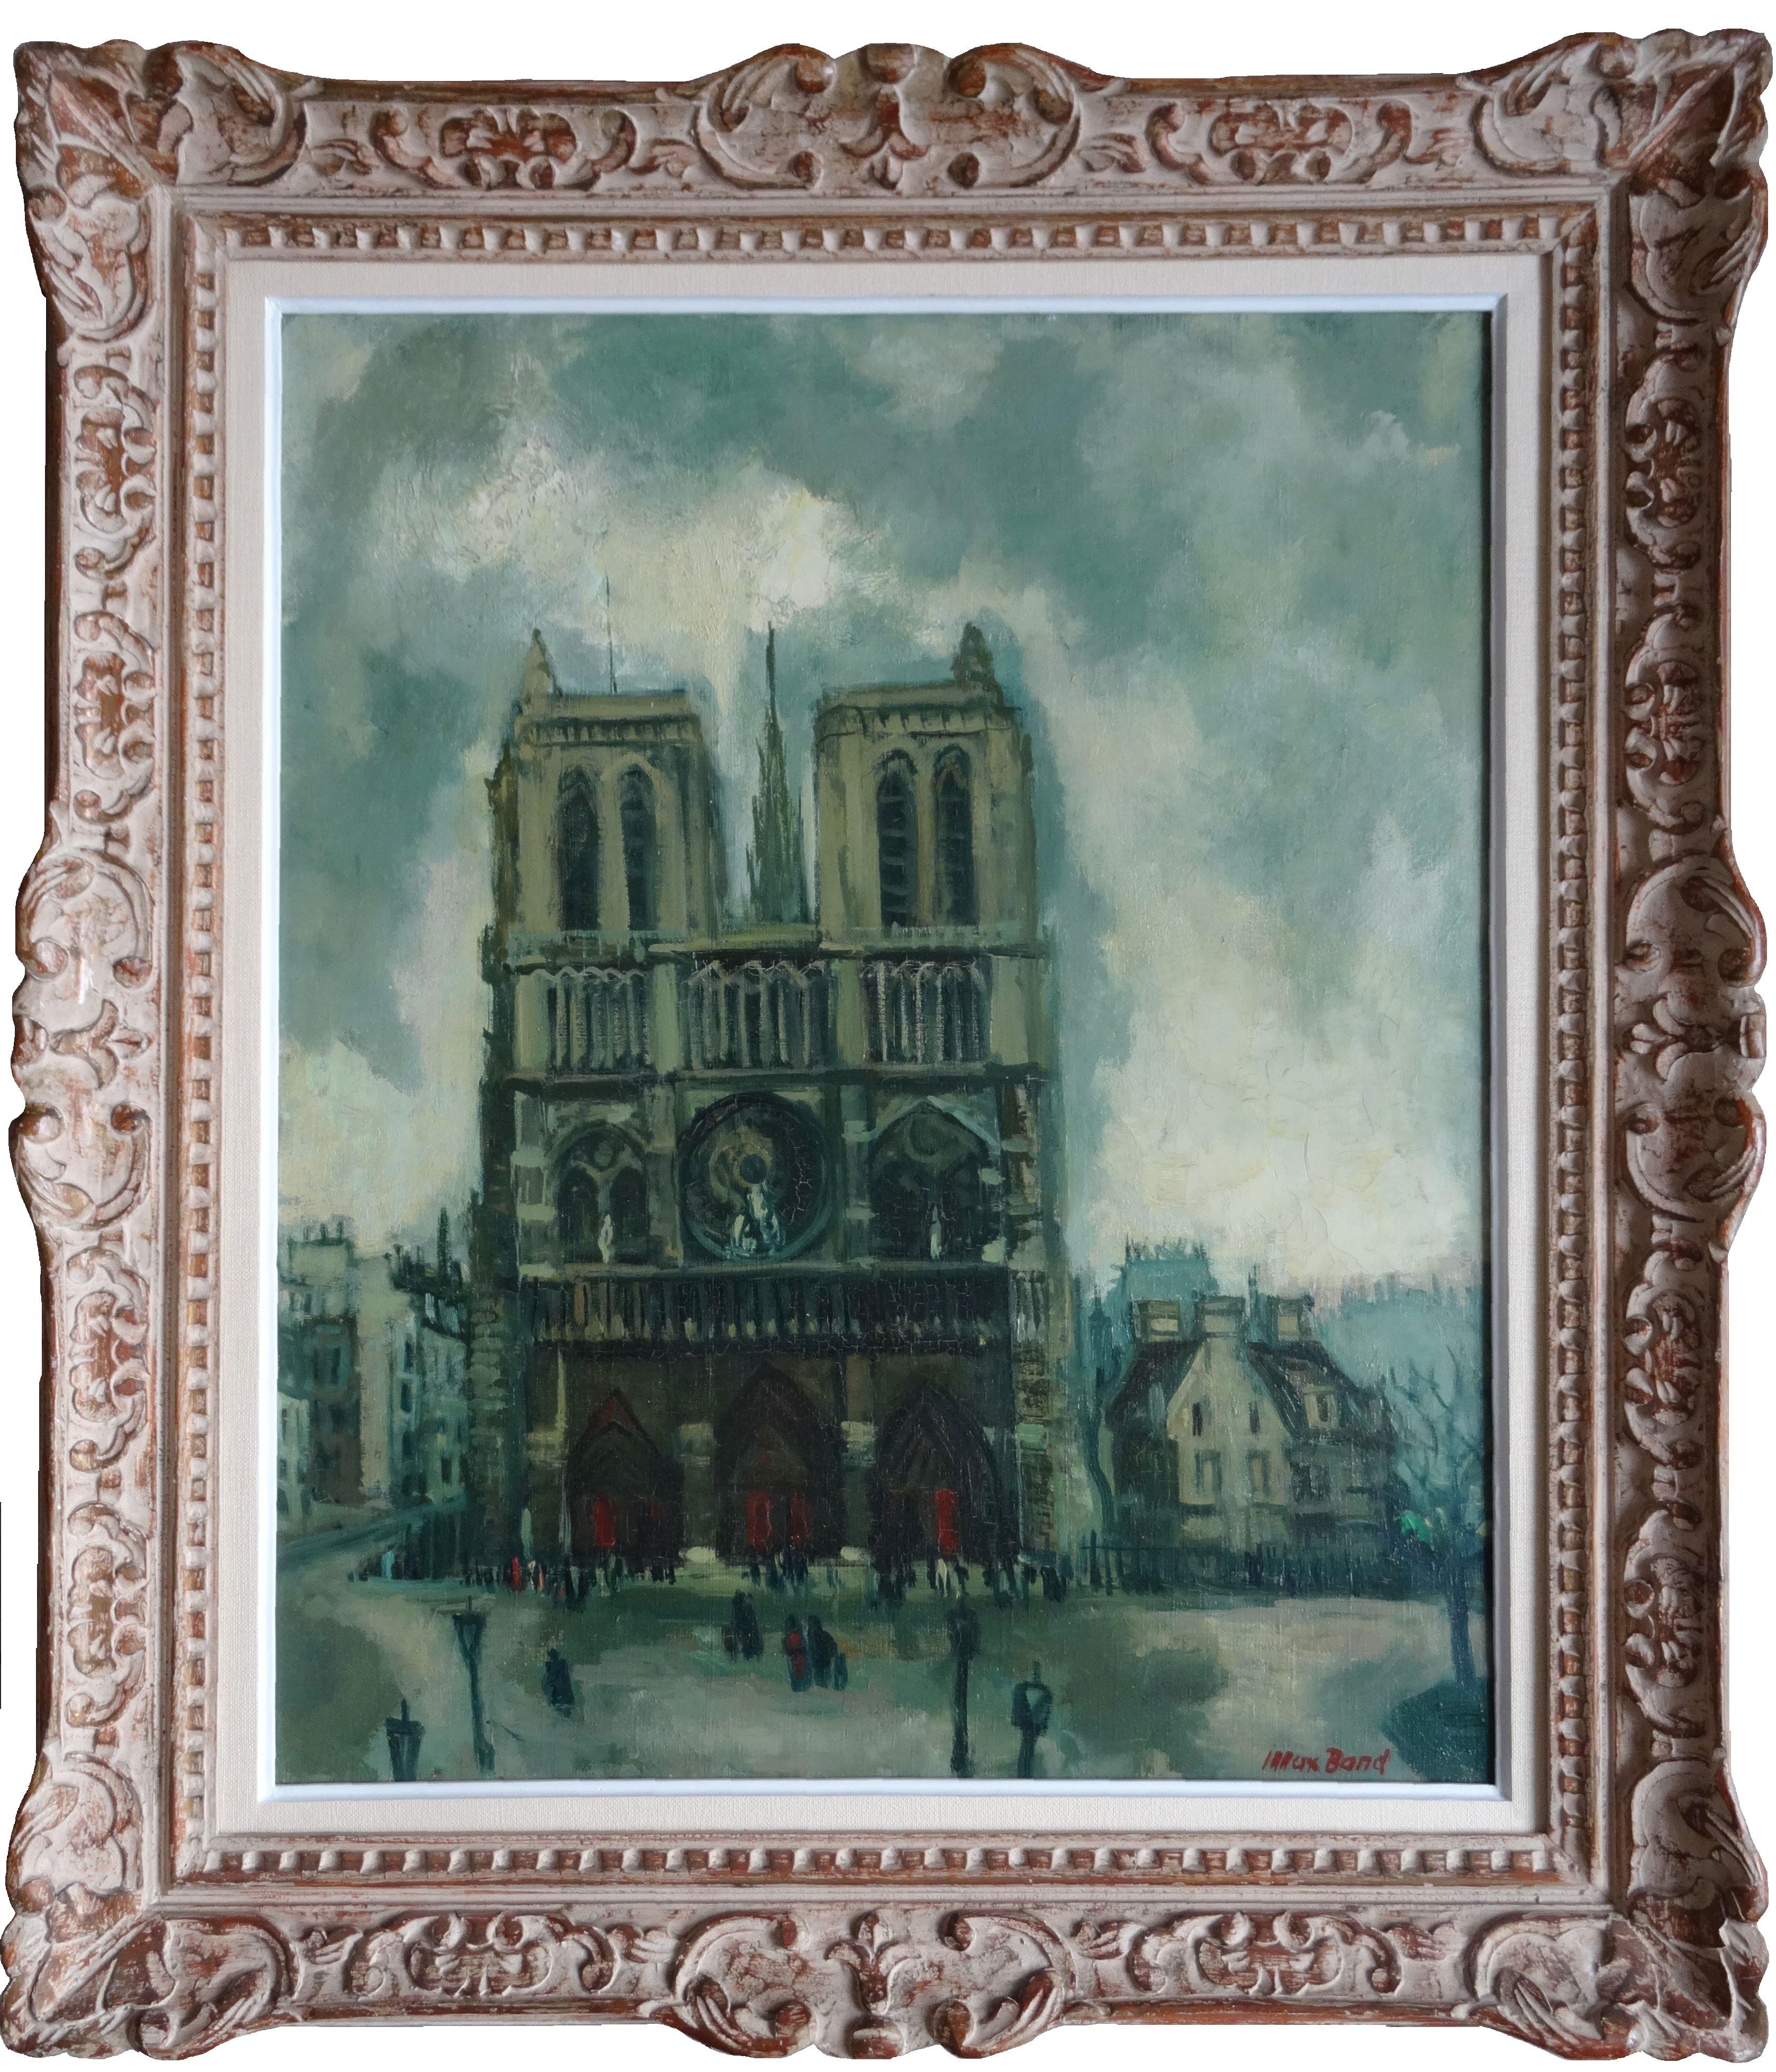 Notre-Dame de Paris. Oil on canvas, 65x54 cm - Painting by Max Band